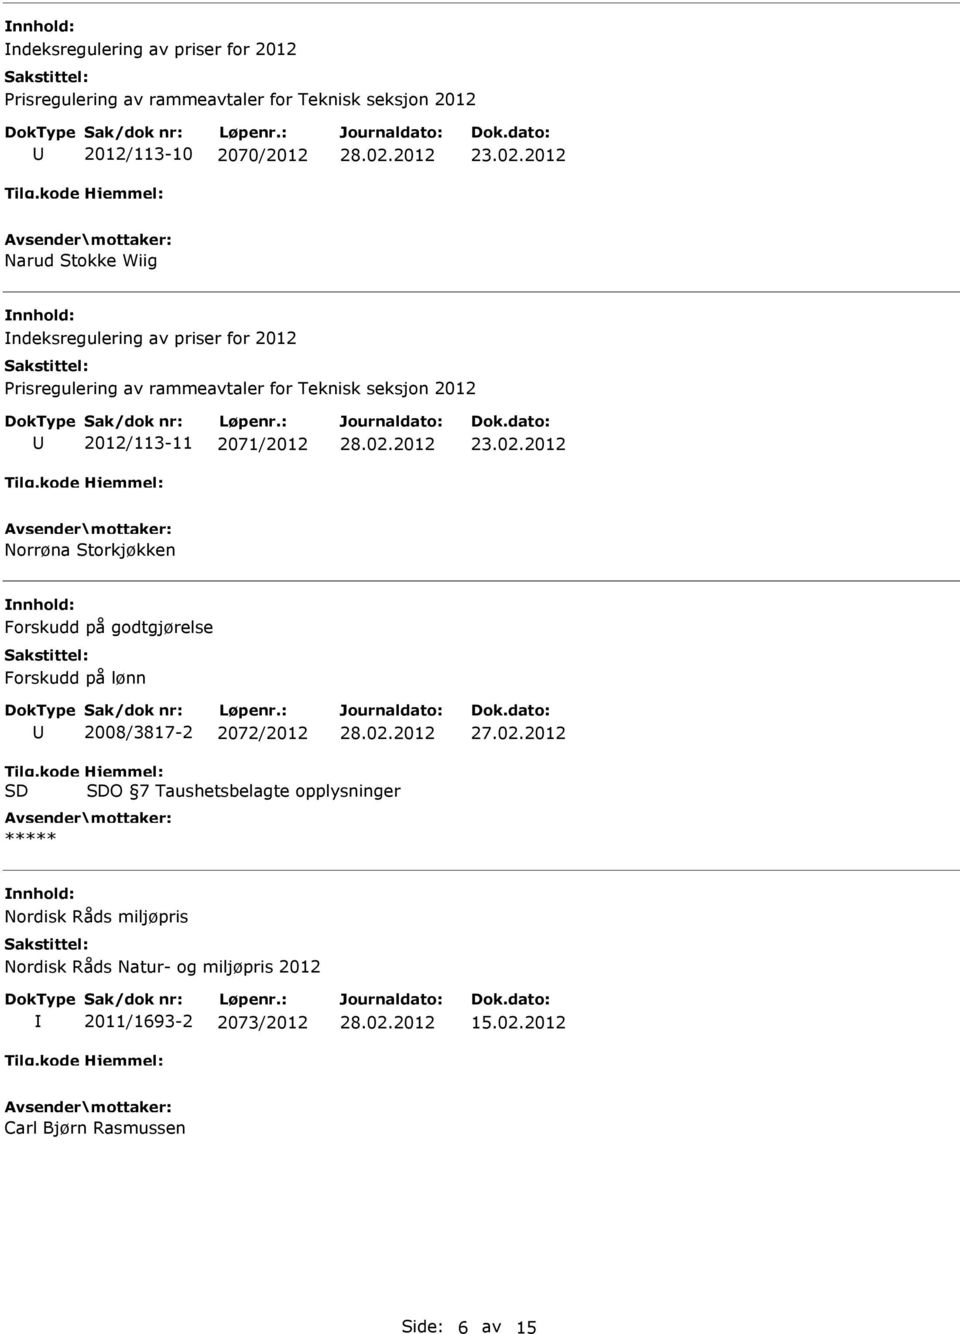 lønn 2008/3817-2 2072/2012 O 7 Taushetsbelagte opplysninger ***** Nordisk Råds miljøpris